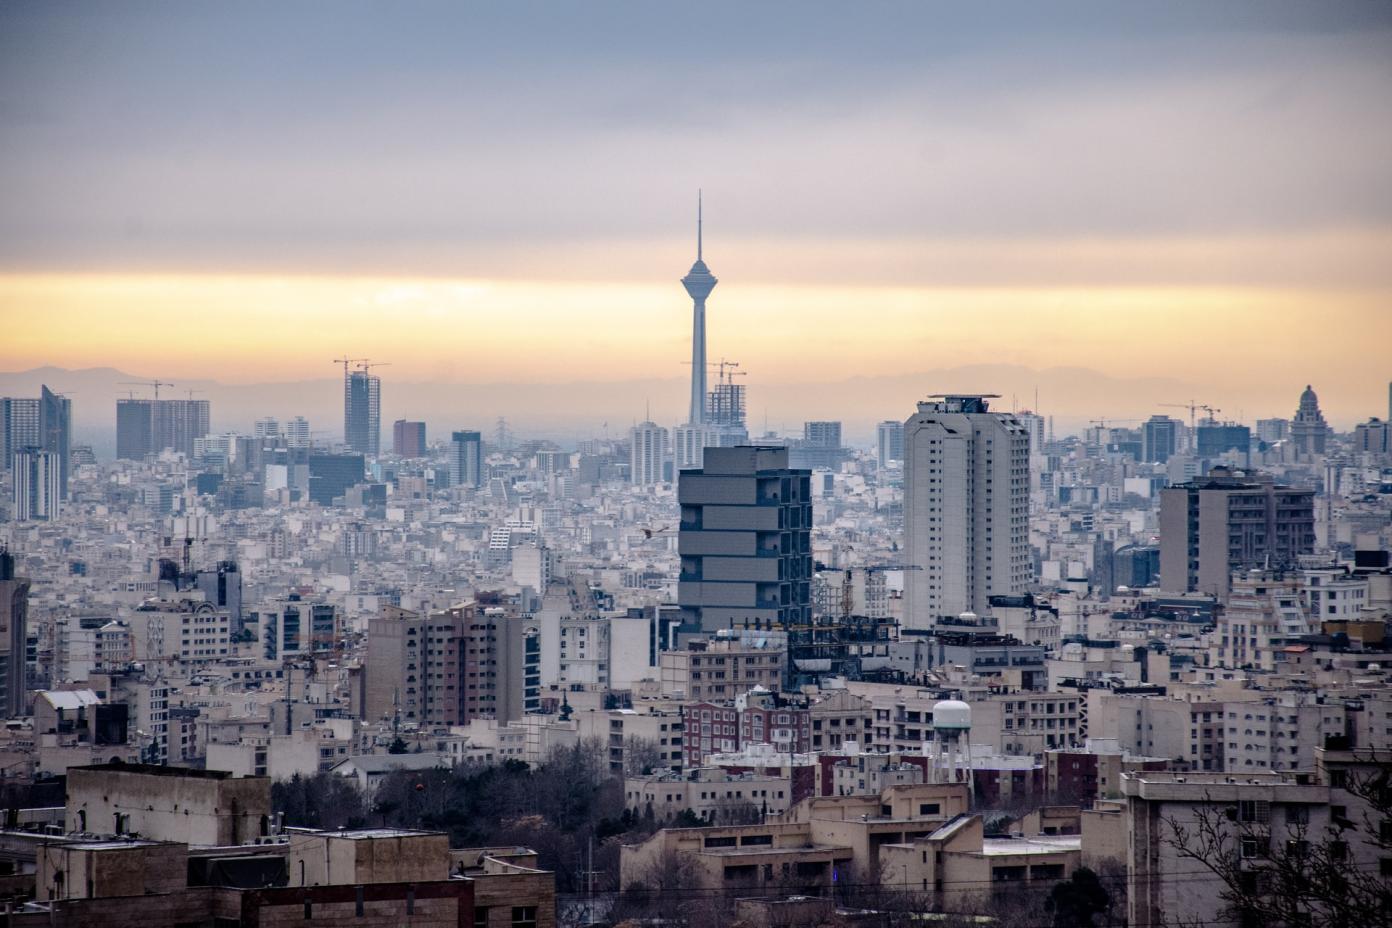 پیش بینی بانک جهانی اقتصاد ایران